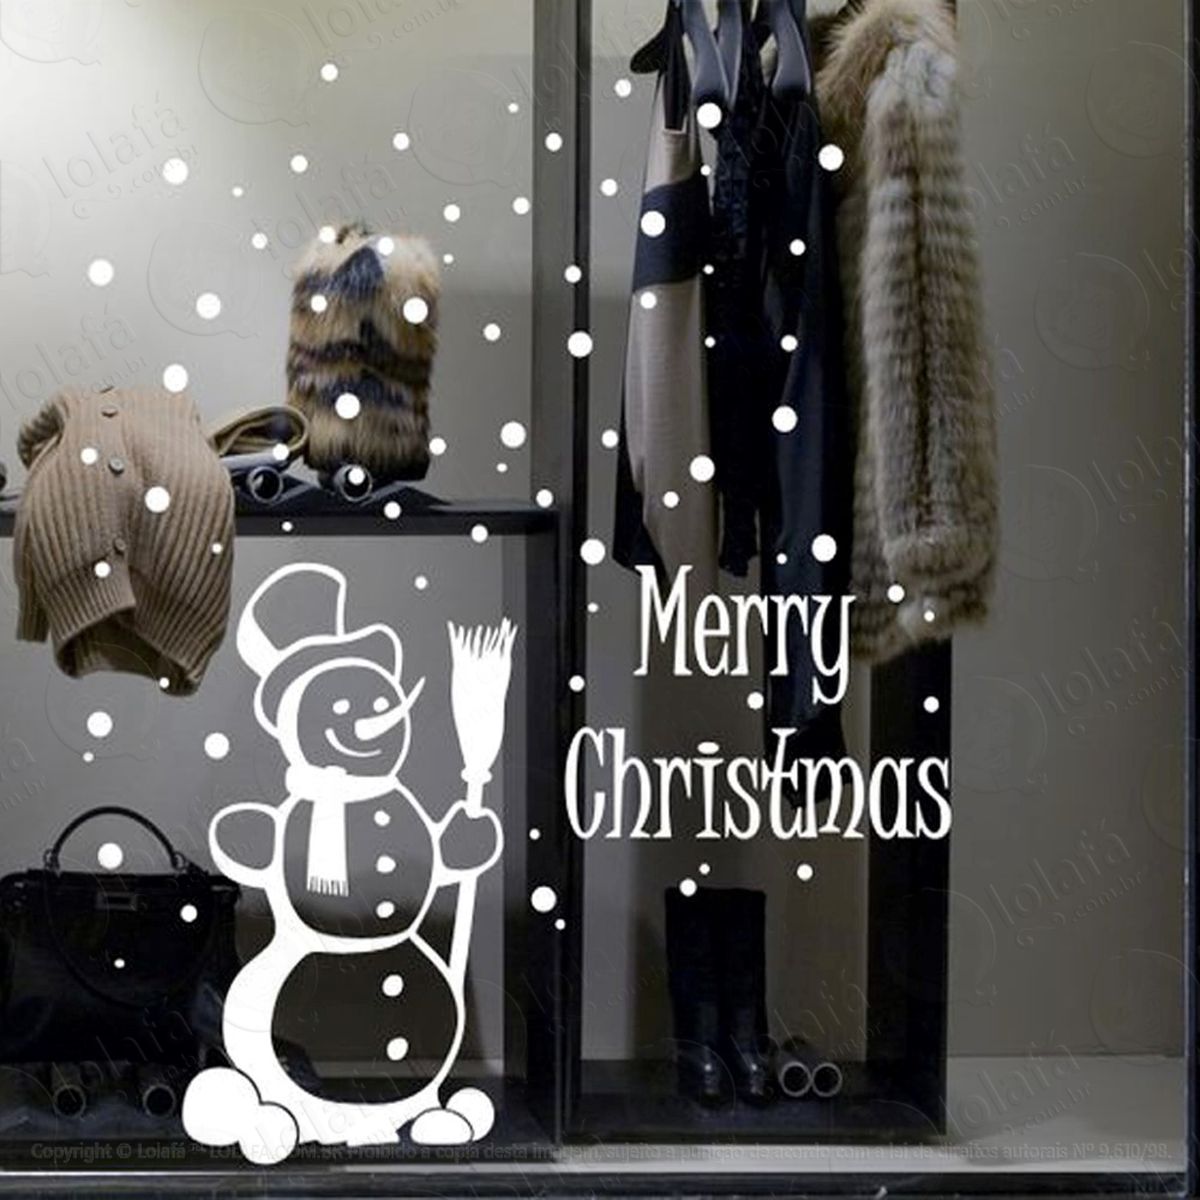 boneco de neve merry christmas adesivo de natal para vitrine, parede, porta de vidro - decoração natalina mod:274